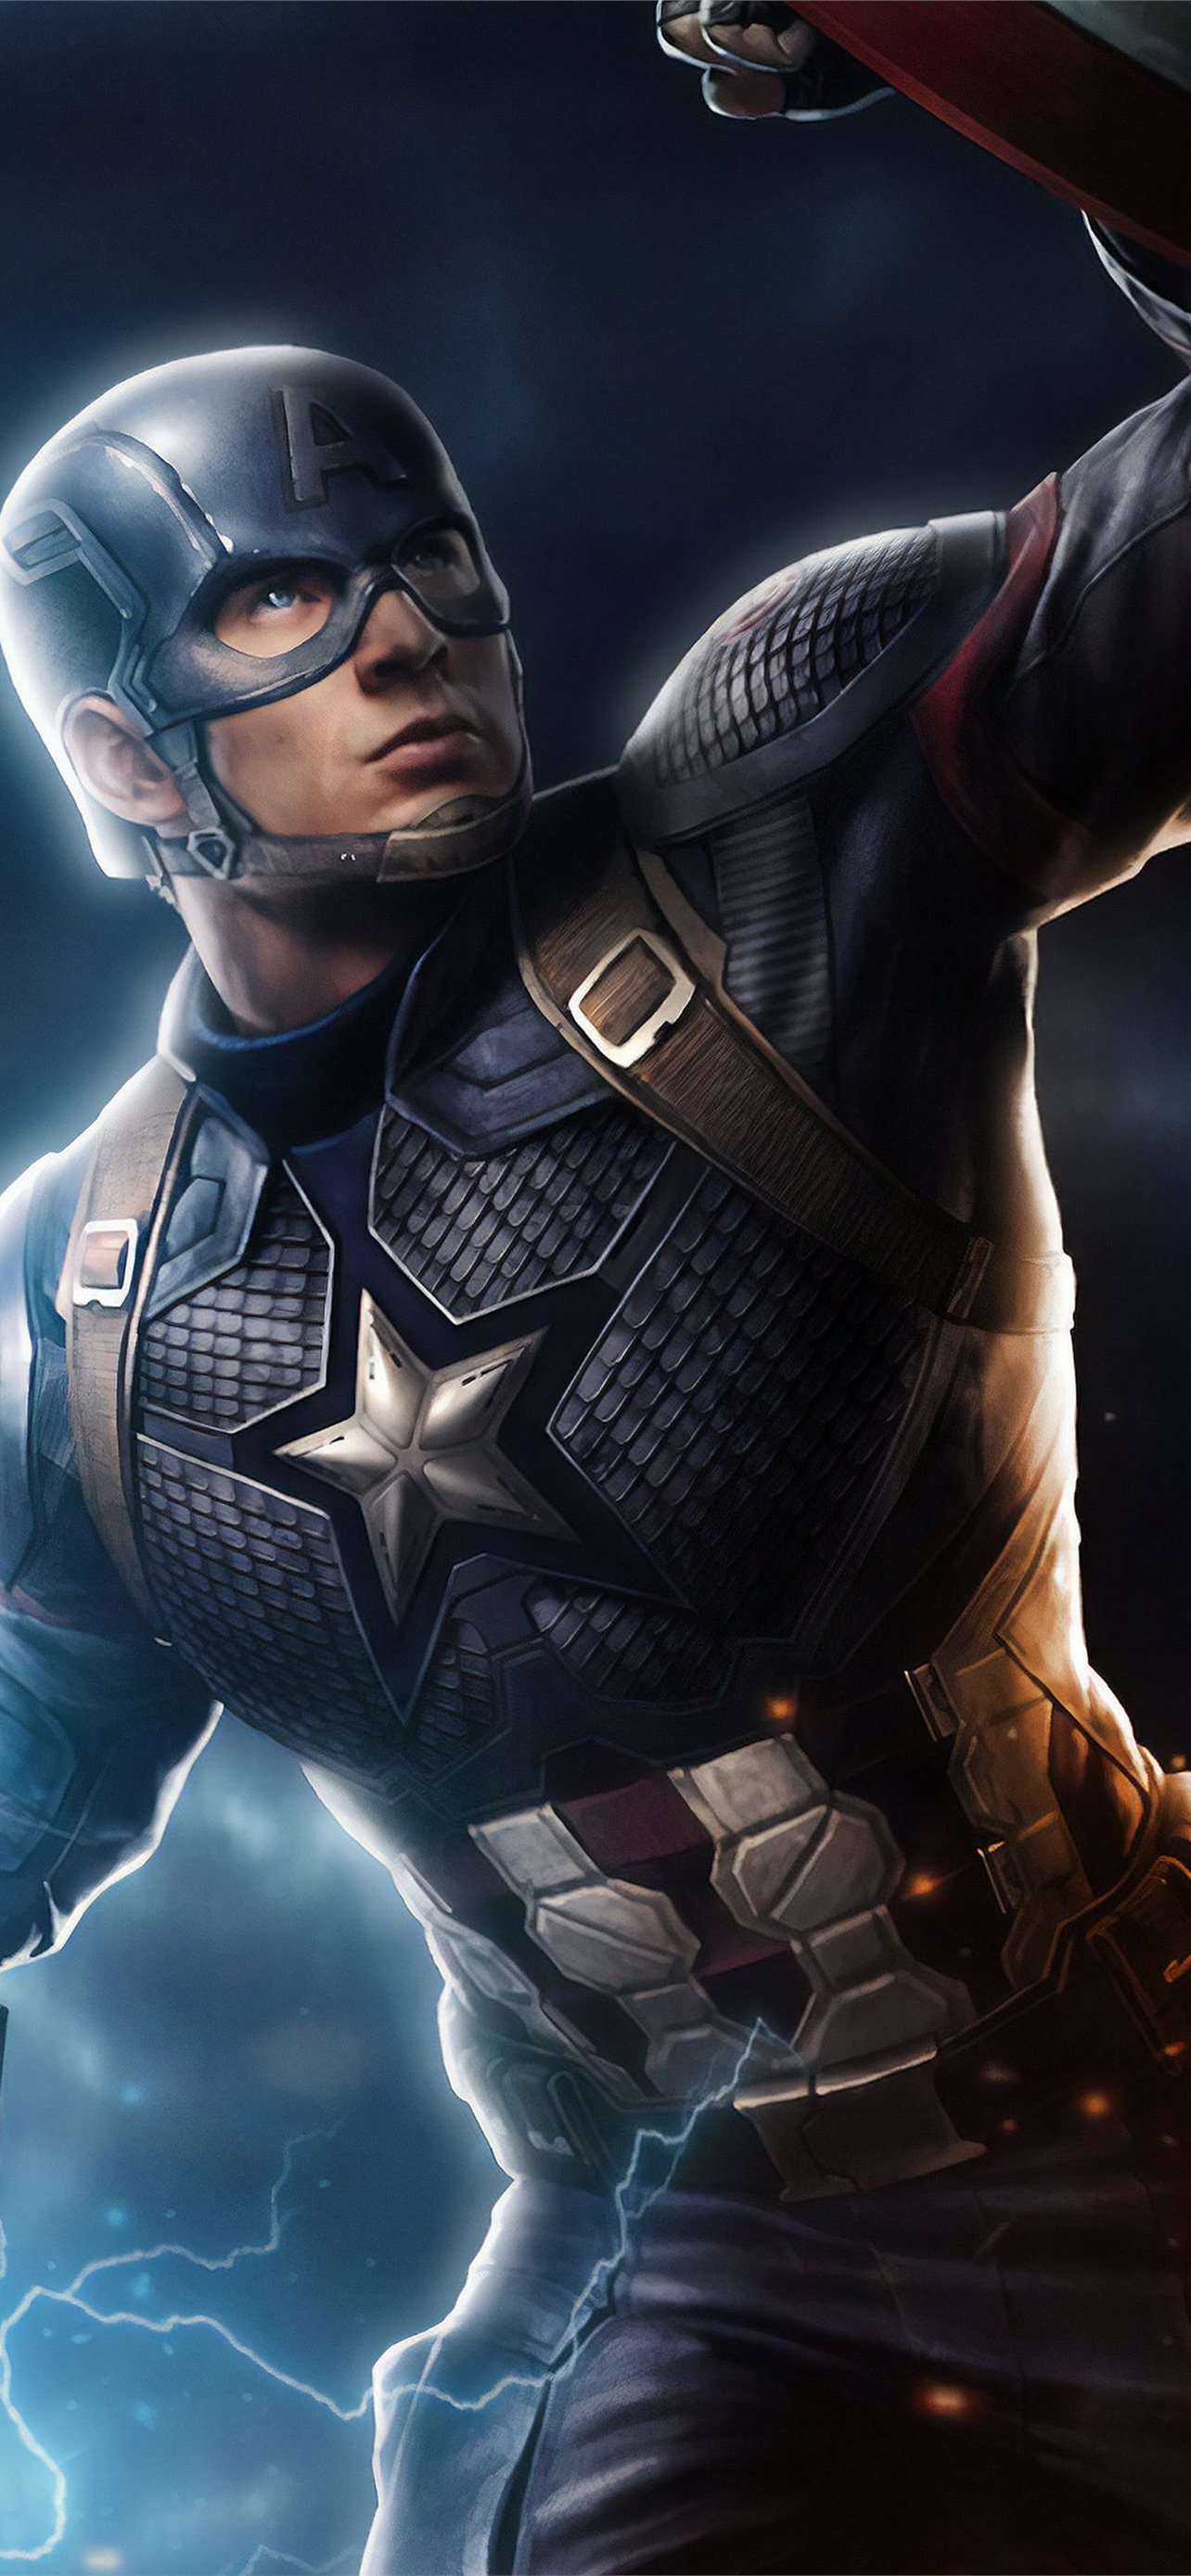 Avengers Endgame Captain America Mjolnir Hammer Li... iPhone Wallpapers  Free Download